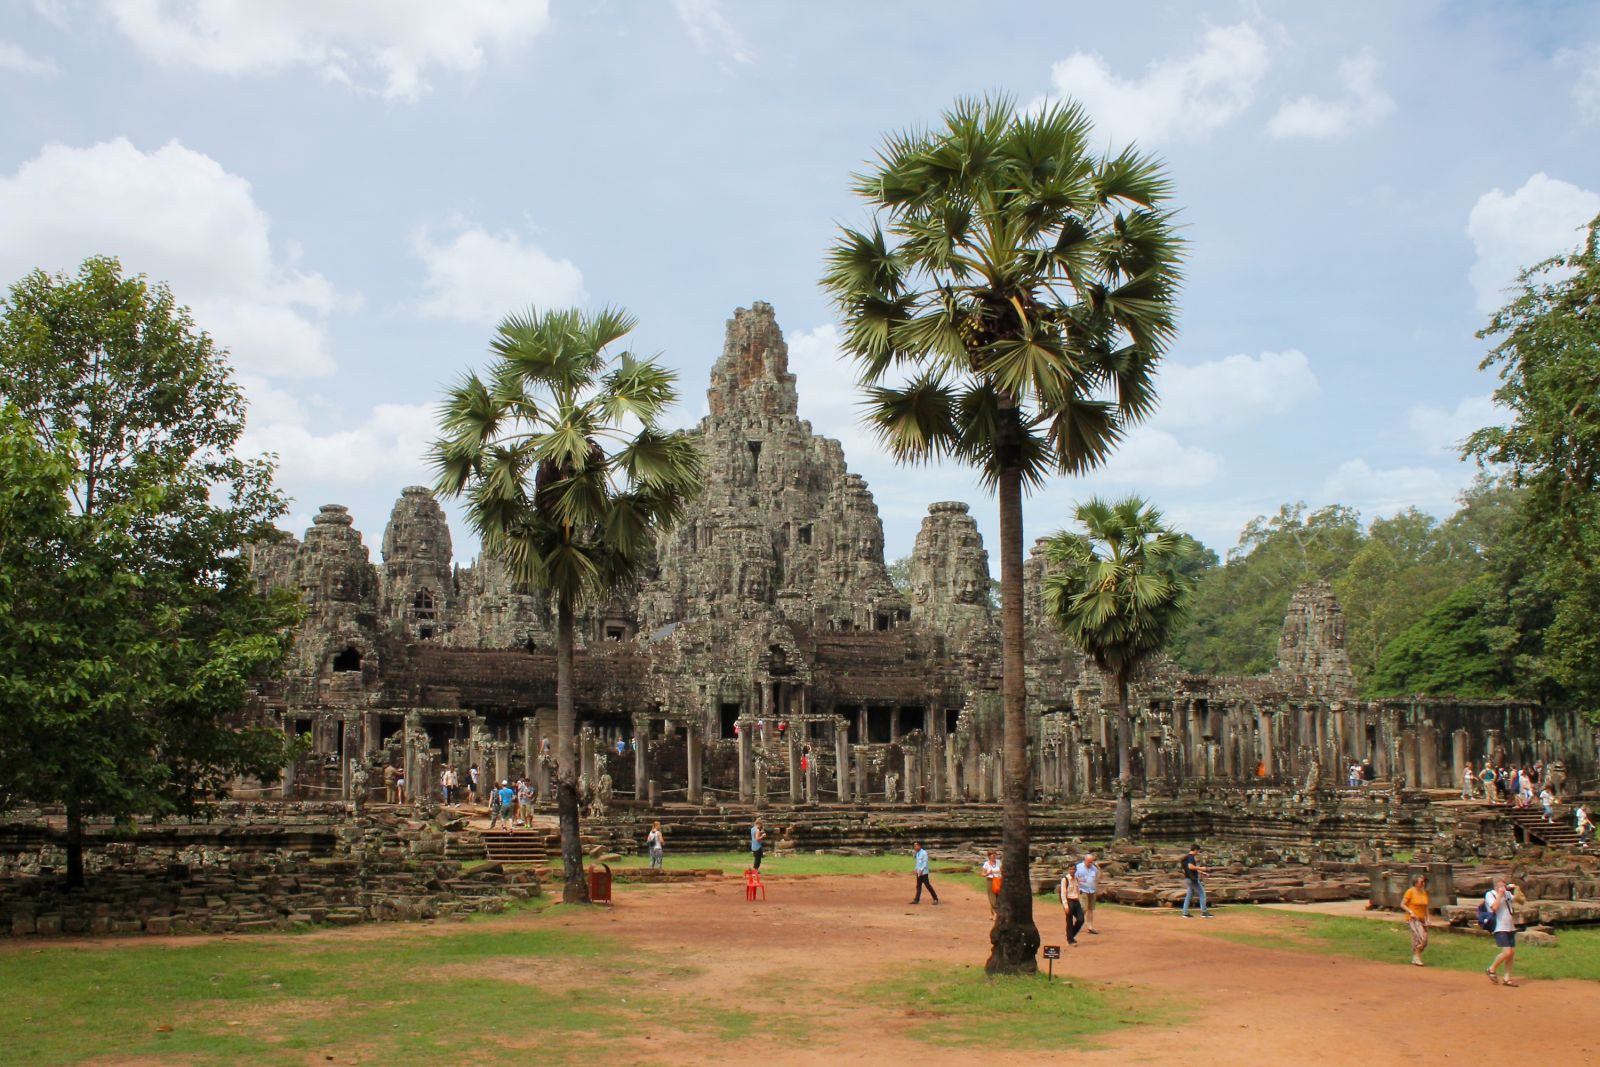 Bayon ist neben dem Angkor Wat die bekannteste und eindrucksvollste Tempelanlage in Angkor